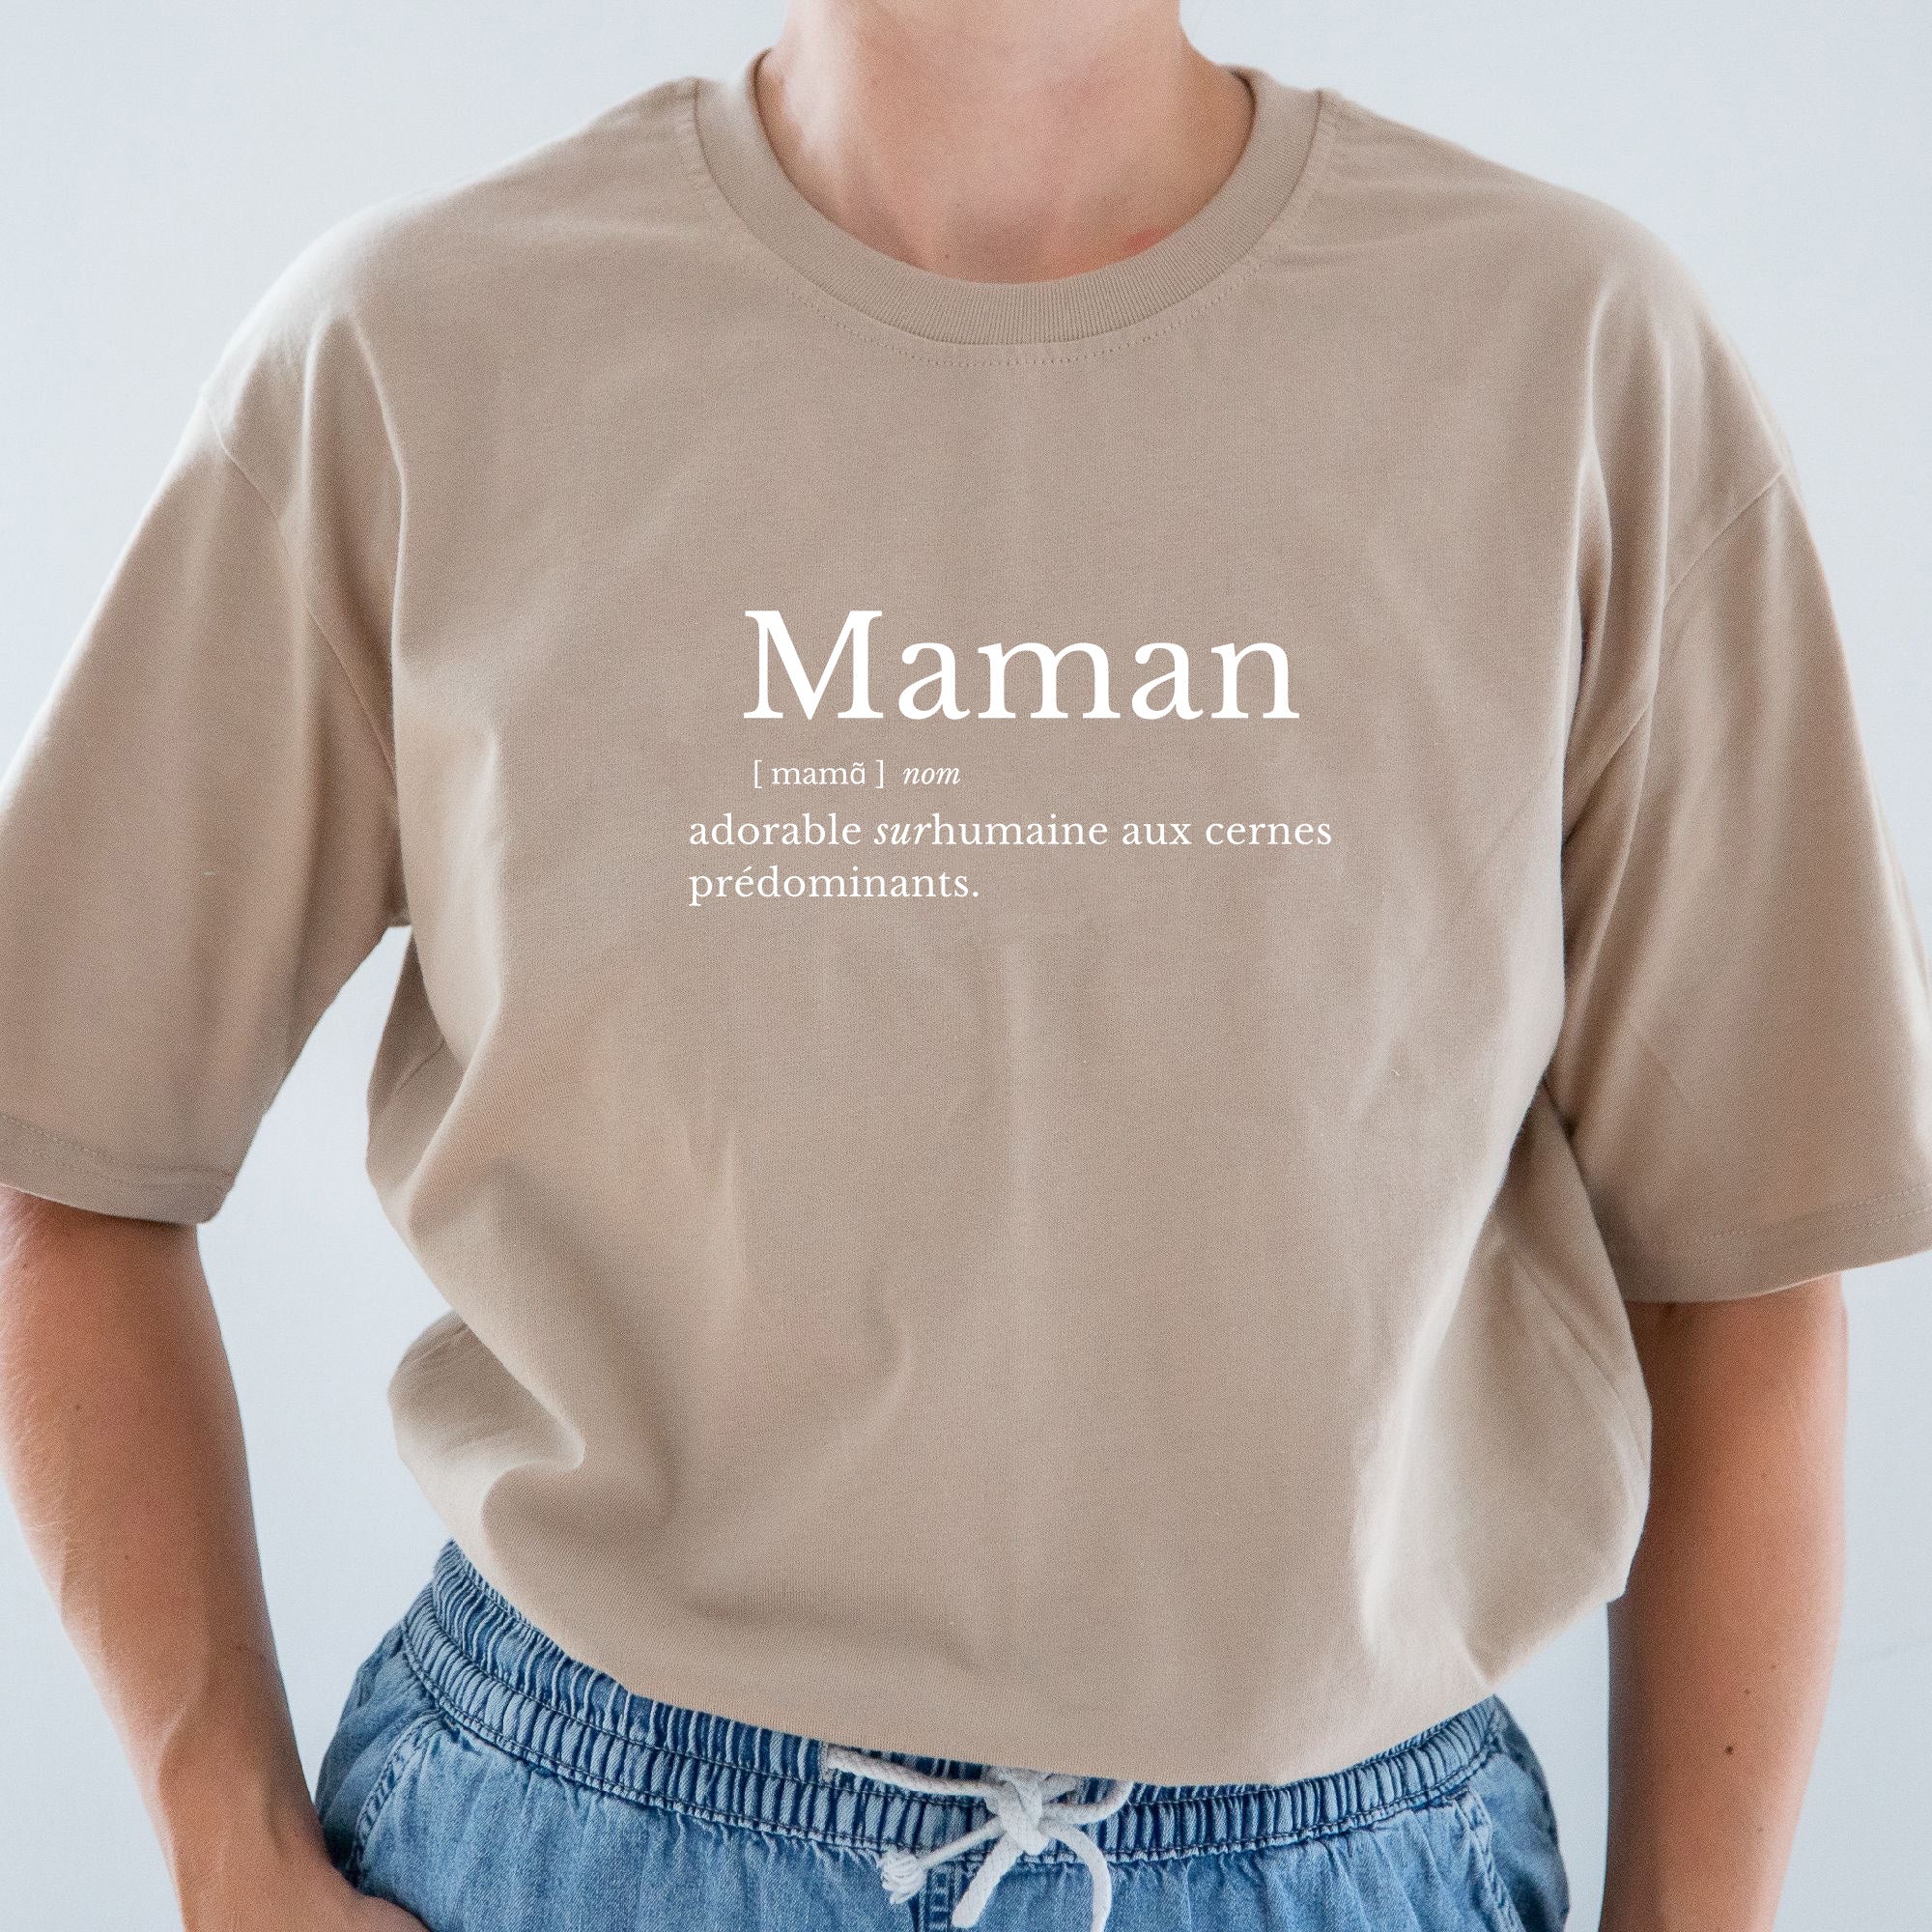 T-shirt pour femmes-Définition Maman (Café)